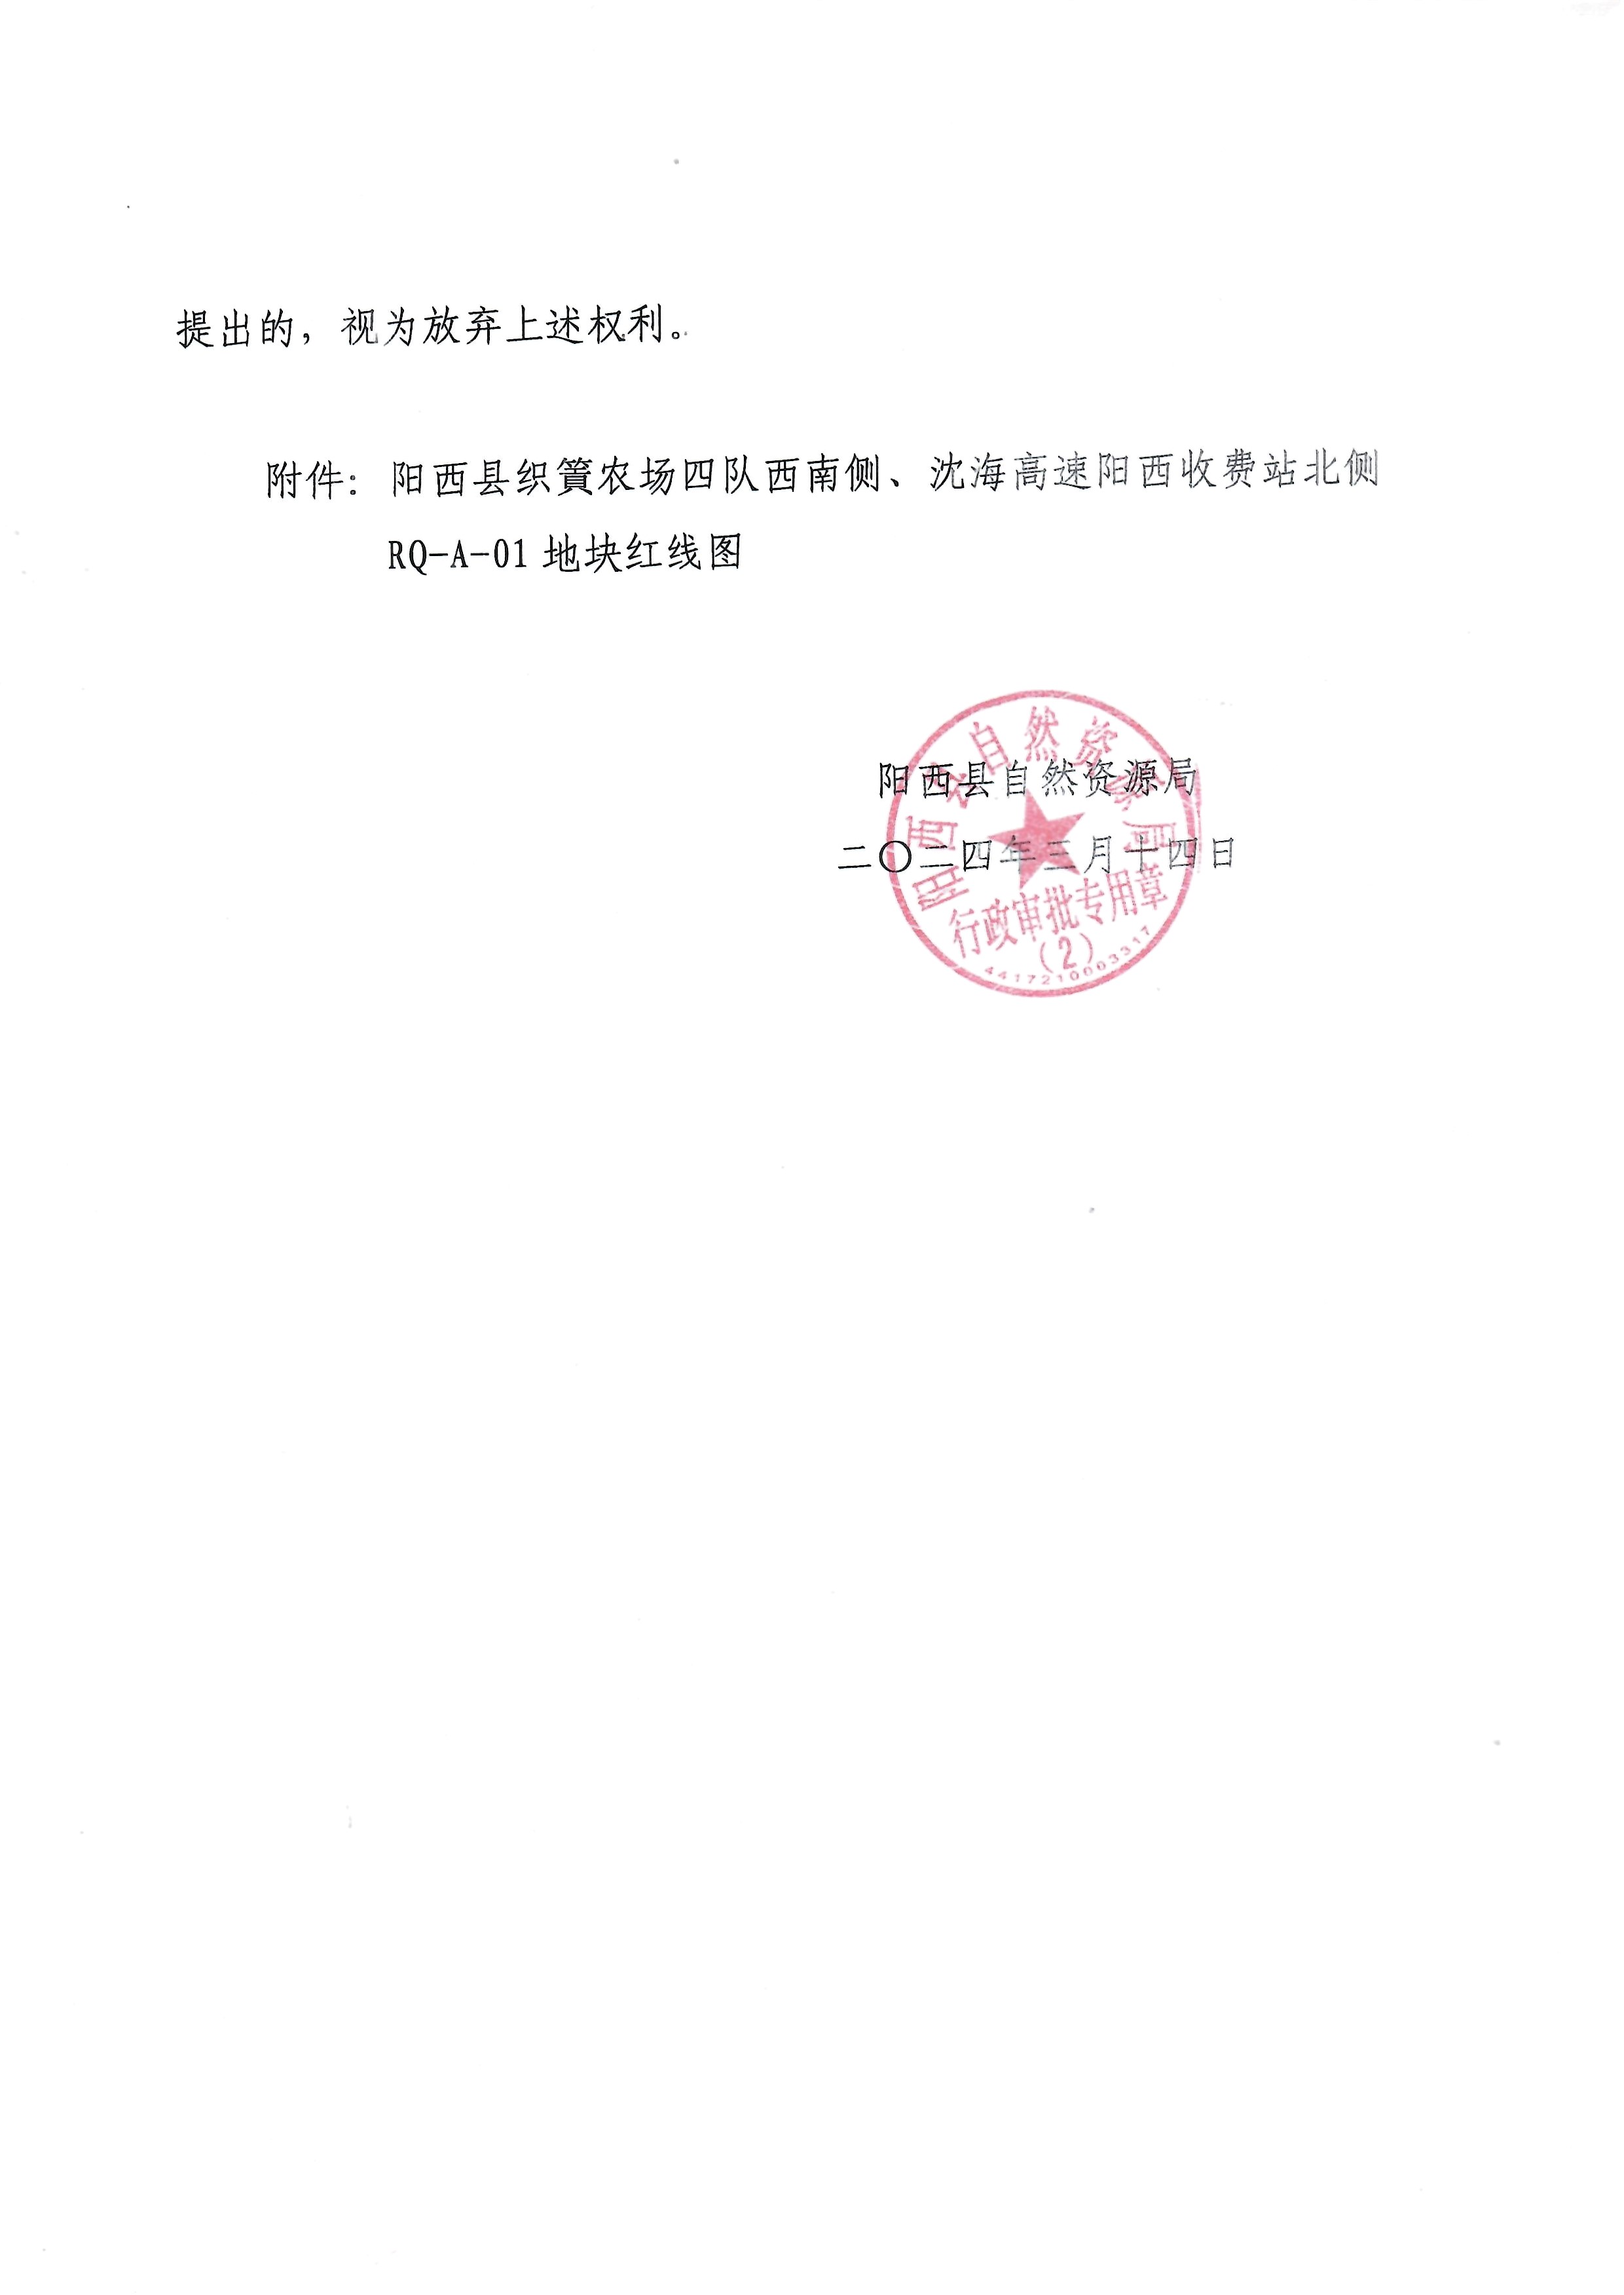 关于阳江新奥燃气有限公司申请办理《建设用地规划许可证》的批前公示2.jpg